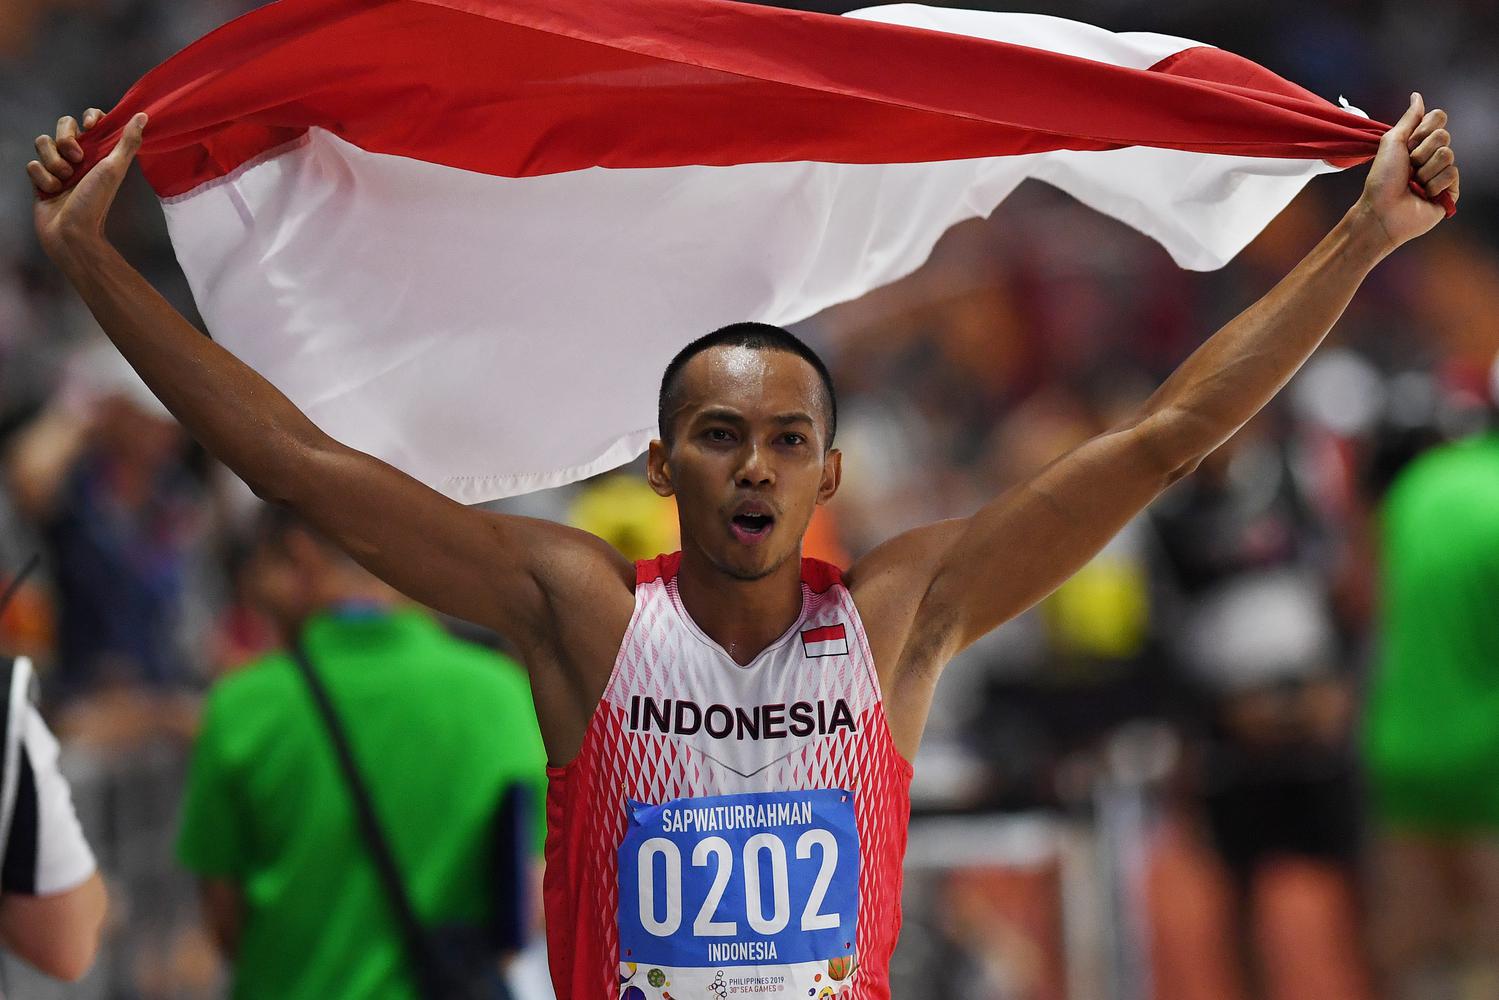 Atlet lompat jauh Indonesia Sapwaturrahman mengibarkan Bendera Merah Putih setelah berhasil memenangkan pertandingan Lompat Jauh Putra SEA Games ke-30 di Stadion Atletik New Clark, Filipina, Sabtu (7/12/2019). Sapwaturrahman berhasil meraih medali emas.